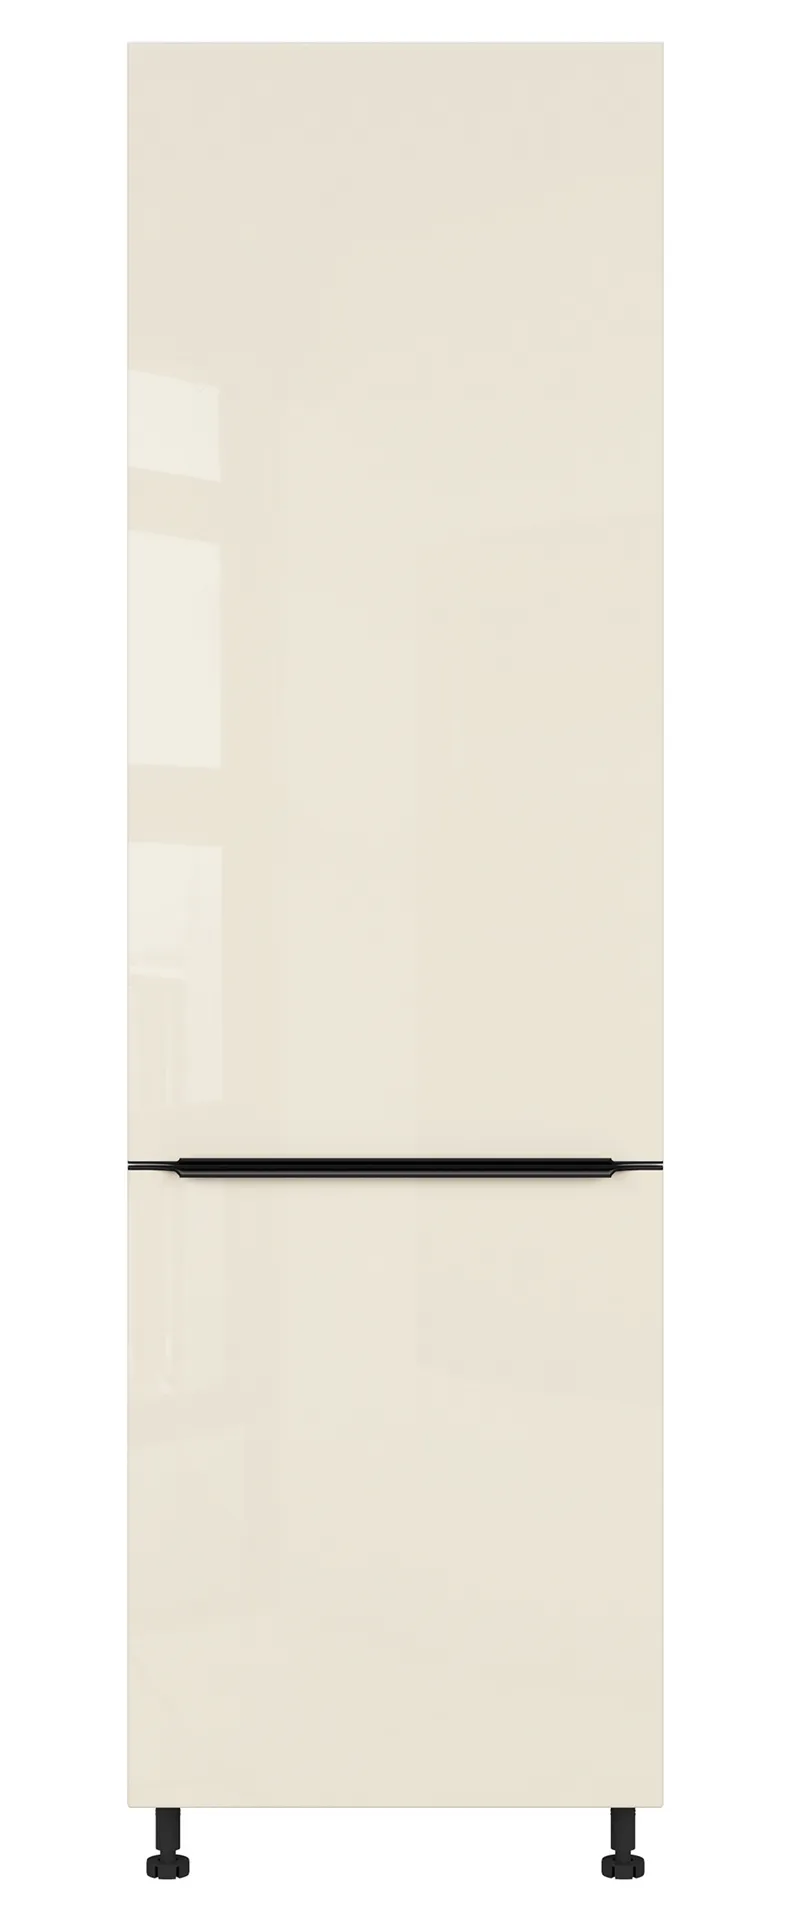 BRW Sole L6 60 см левый высокий кухонный шкаф магнолия жемчуг, альпийский белый/жемчуг магнолии FM_D_60/207_L/L-BAL/MAPE фото №1